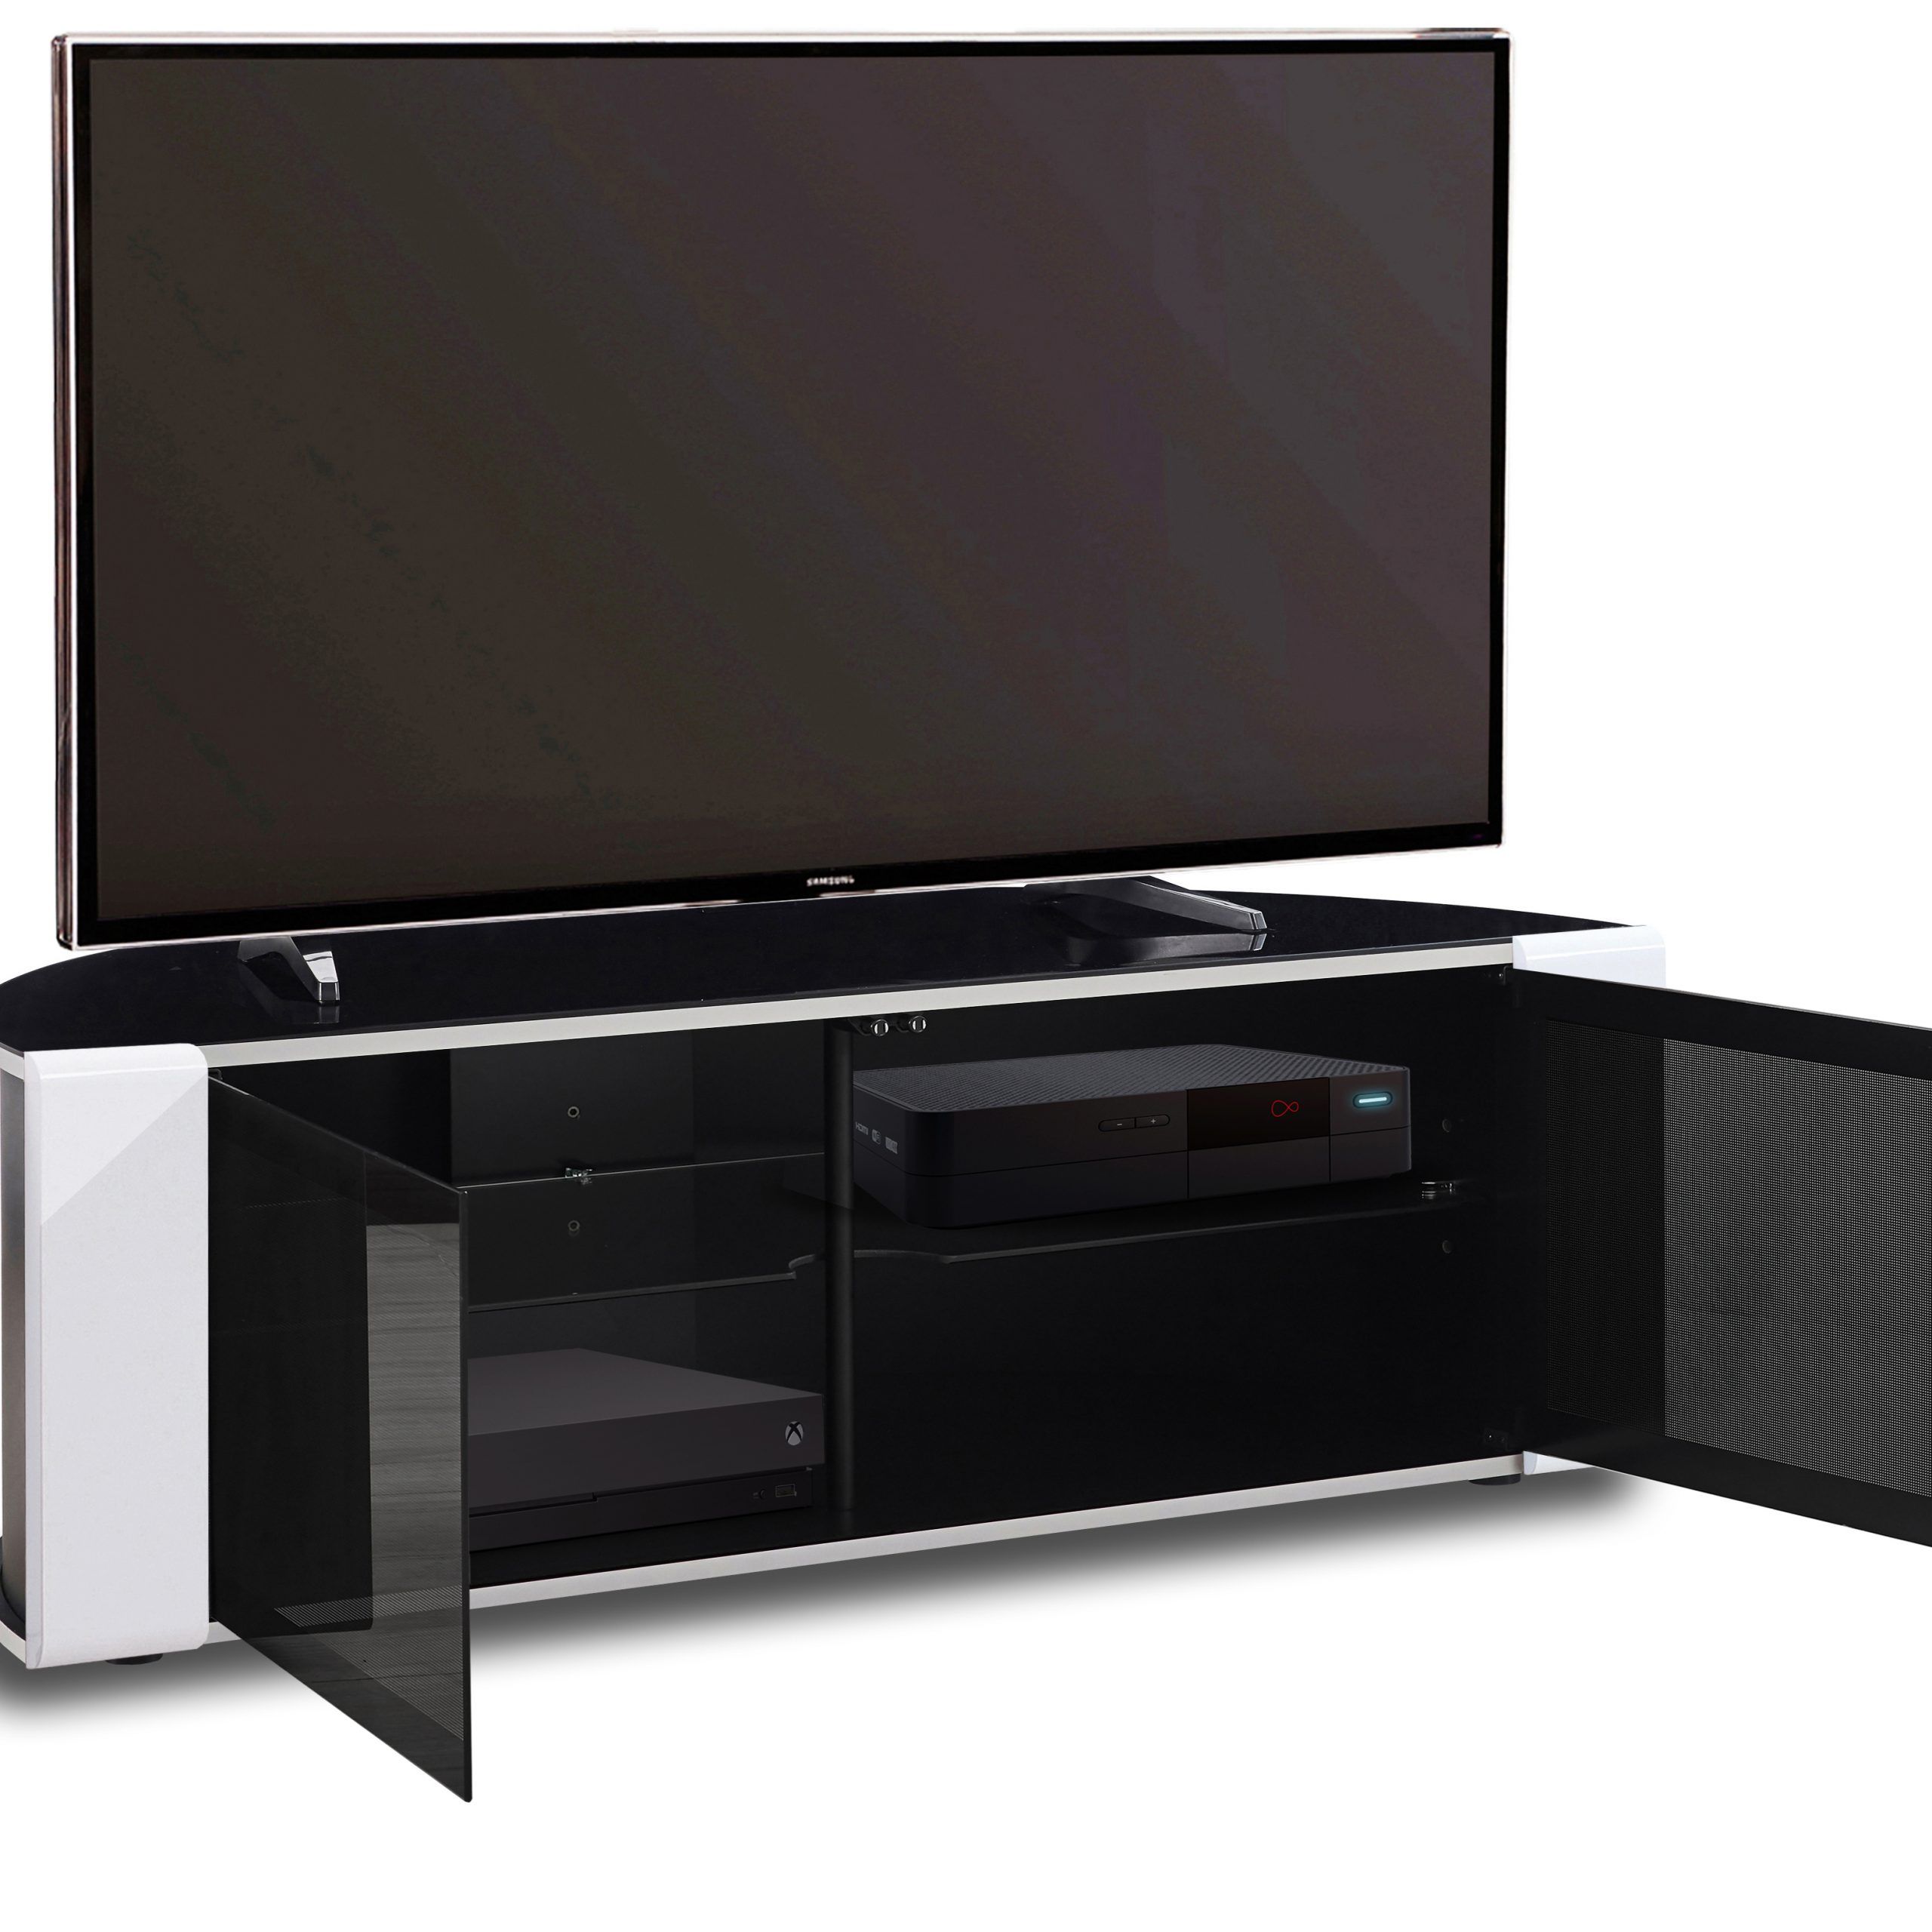 Mda Designs Sirius 850 Gloss Black & White Beam Thru 26 With Regard To Beam Thru Tv Stand (View 6 of 15)